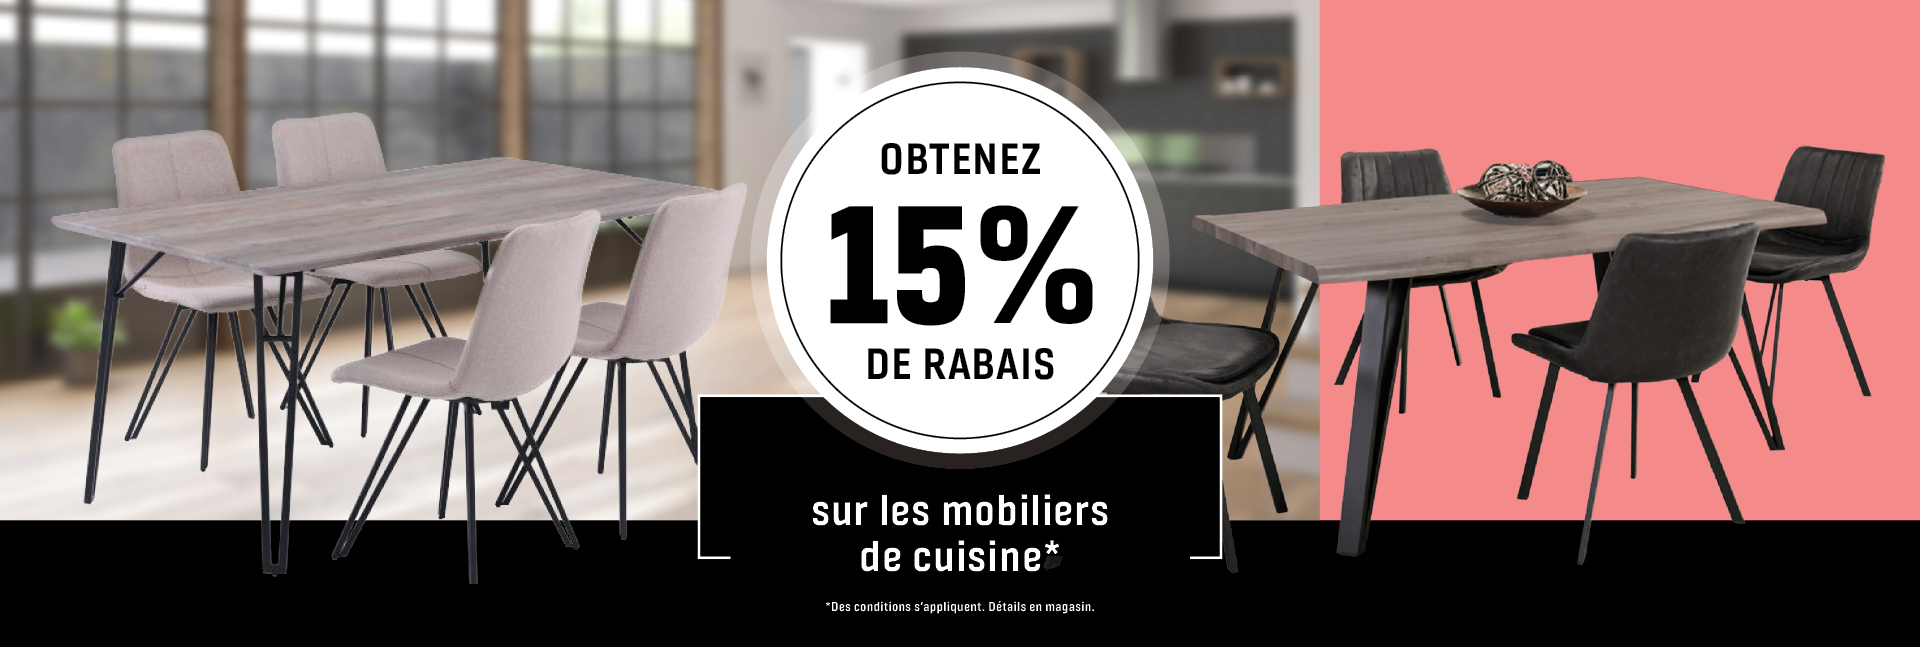 Branchaud - Obtenez 15% de rabais sur les mobiliers de cuisine